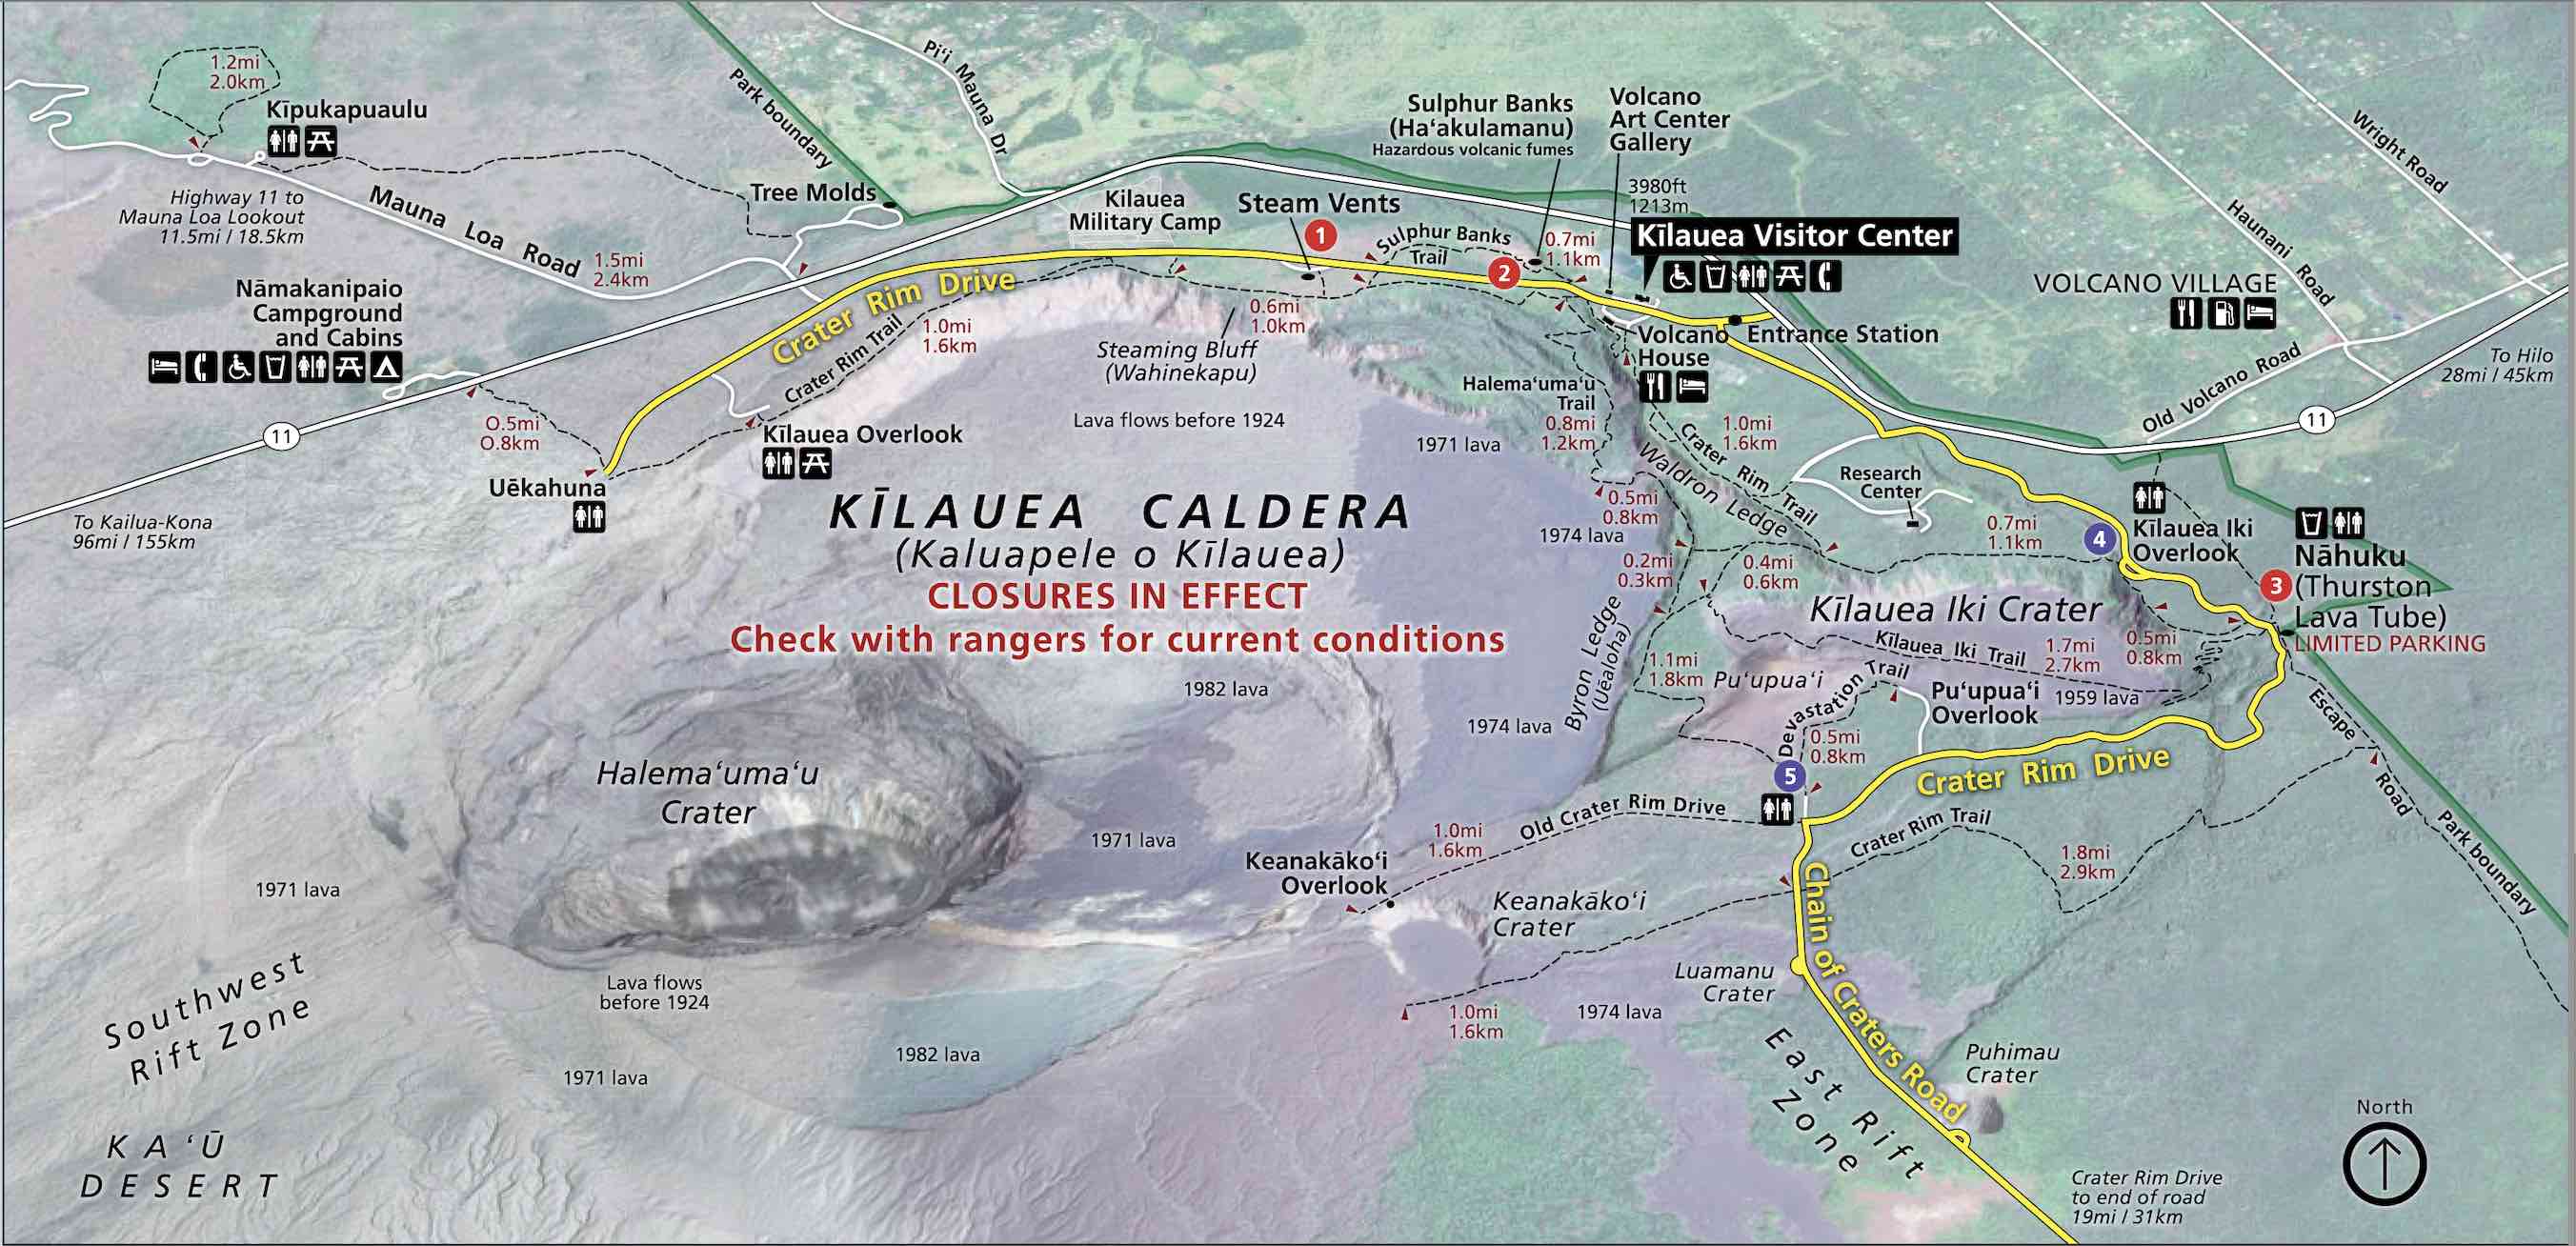 Mapa de la zona del Kilauea